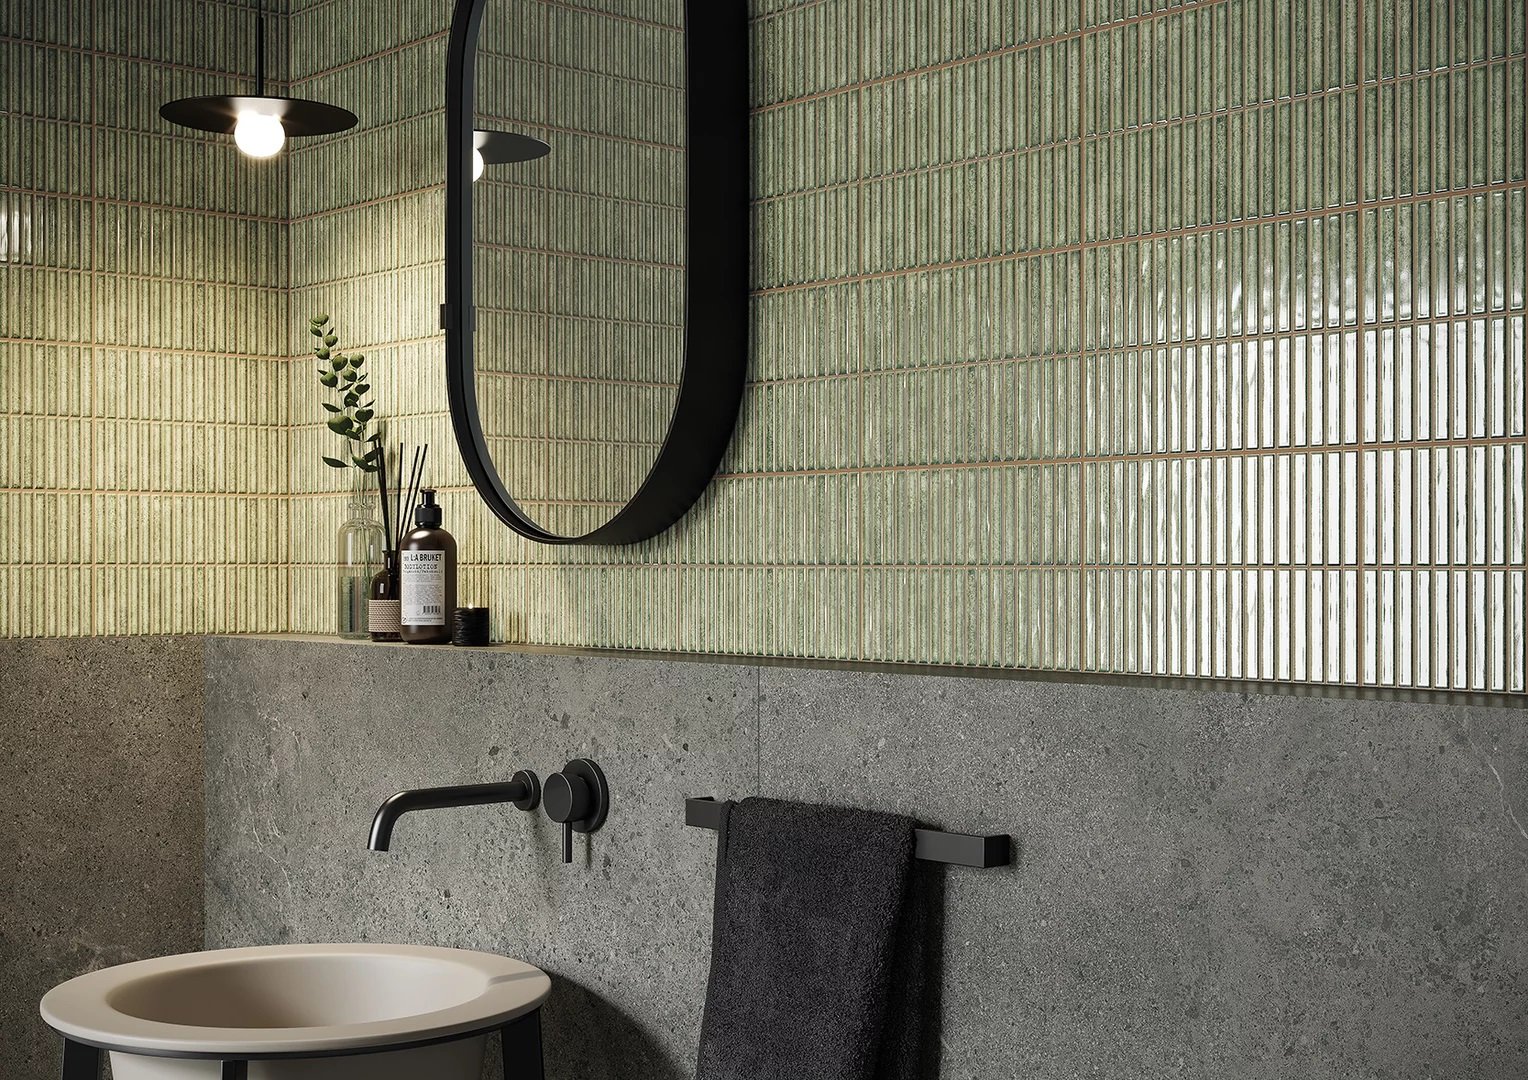 #Koupelna #Moderní styl #zelená #Extra velký formát #Matný obklad #700 - 1000 Kč/m2